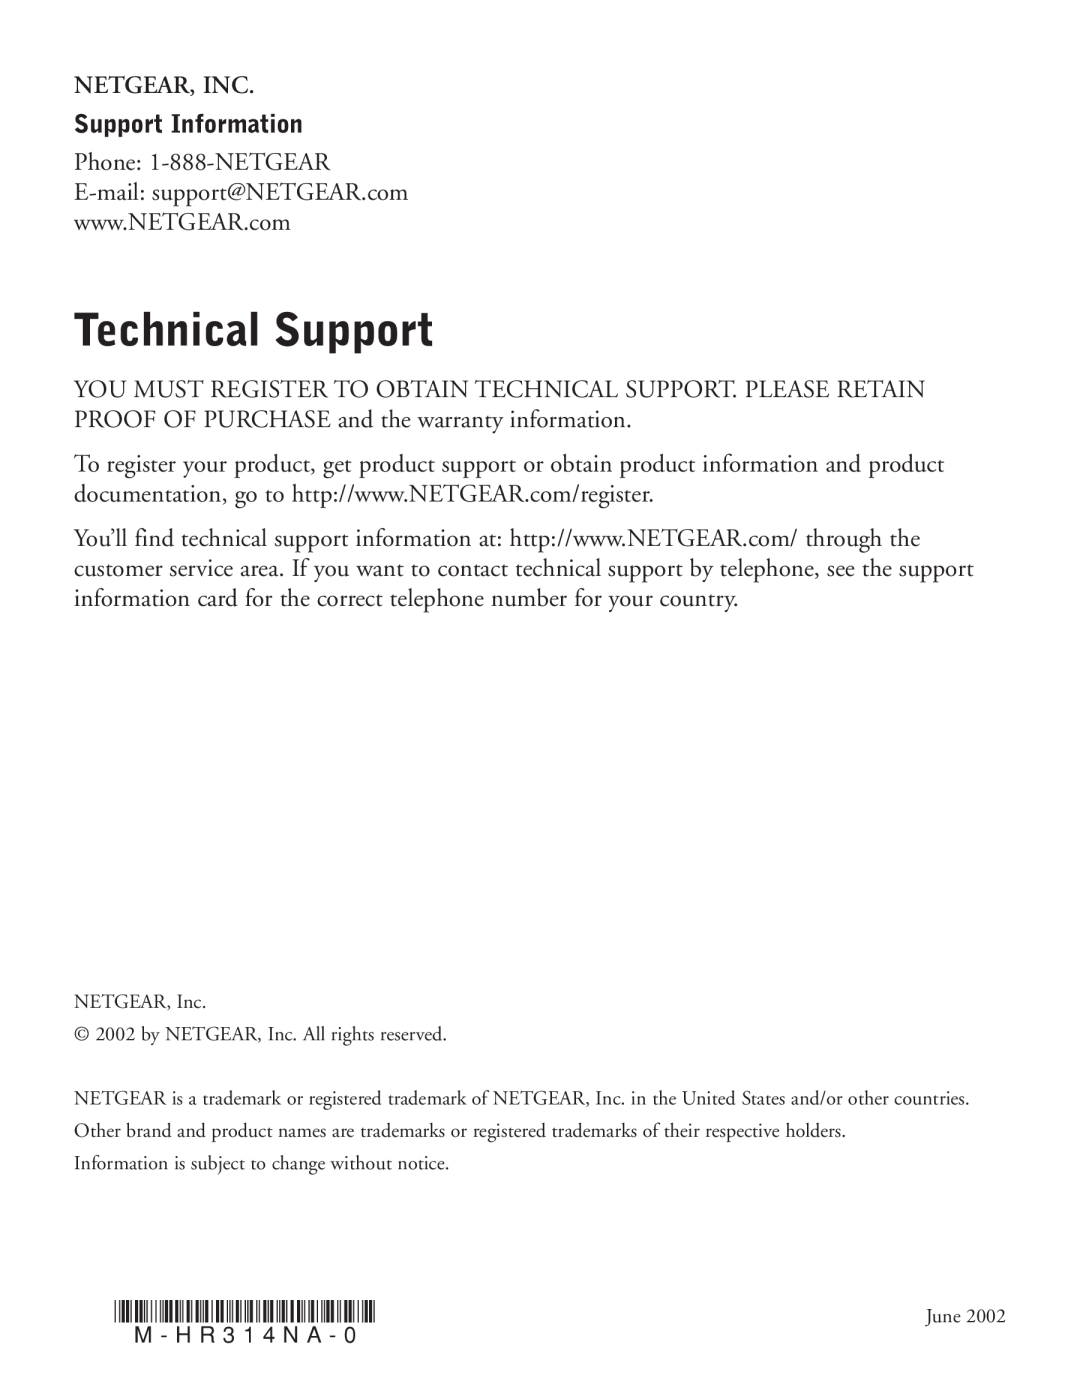 NETGEAR HR314 manual Technical Support, Netgear, Inc, Support Information 